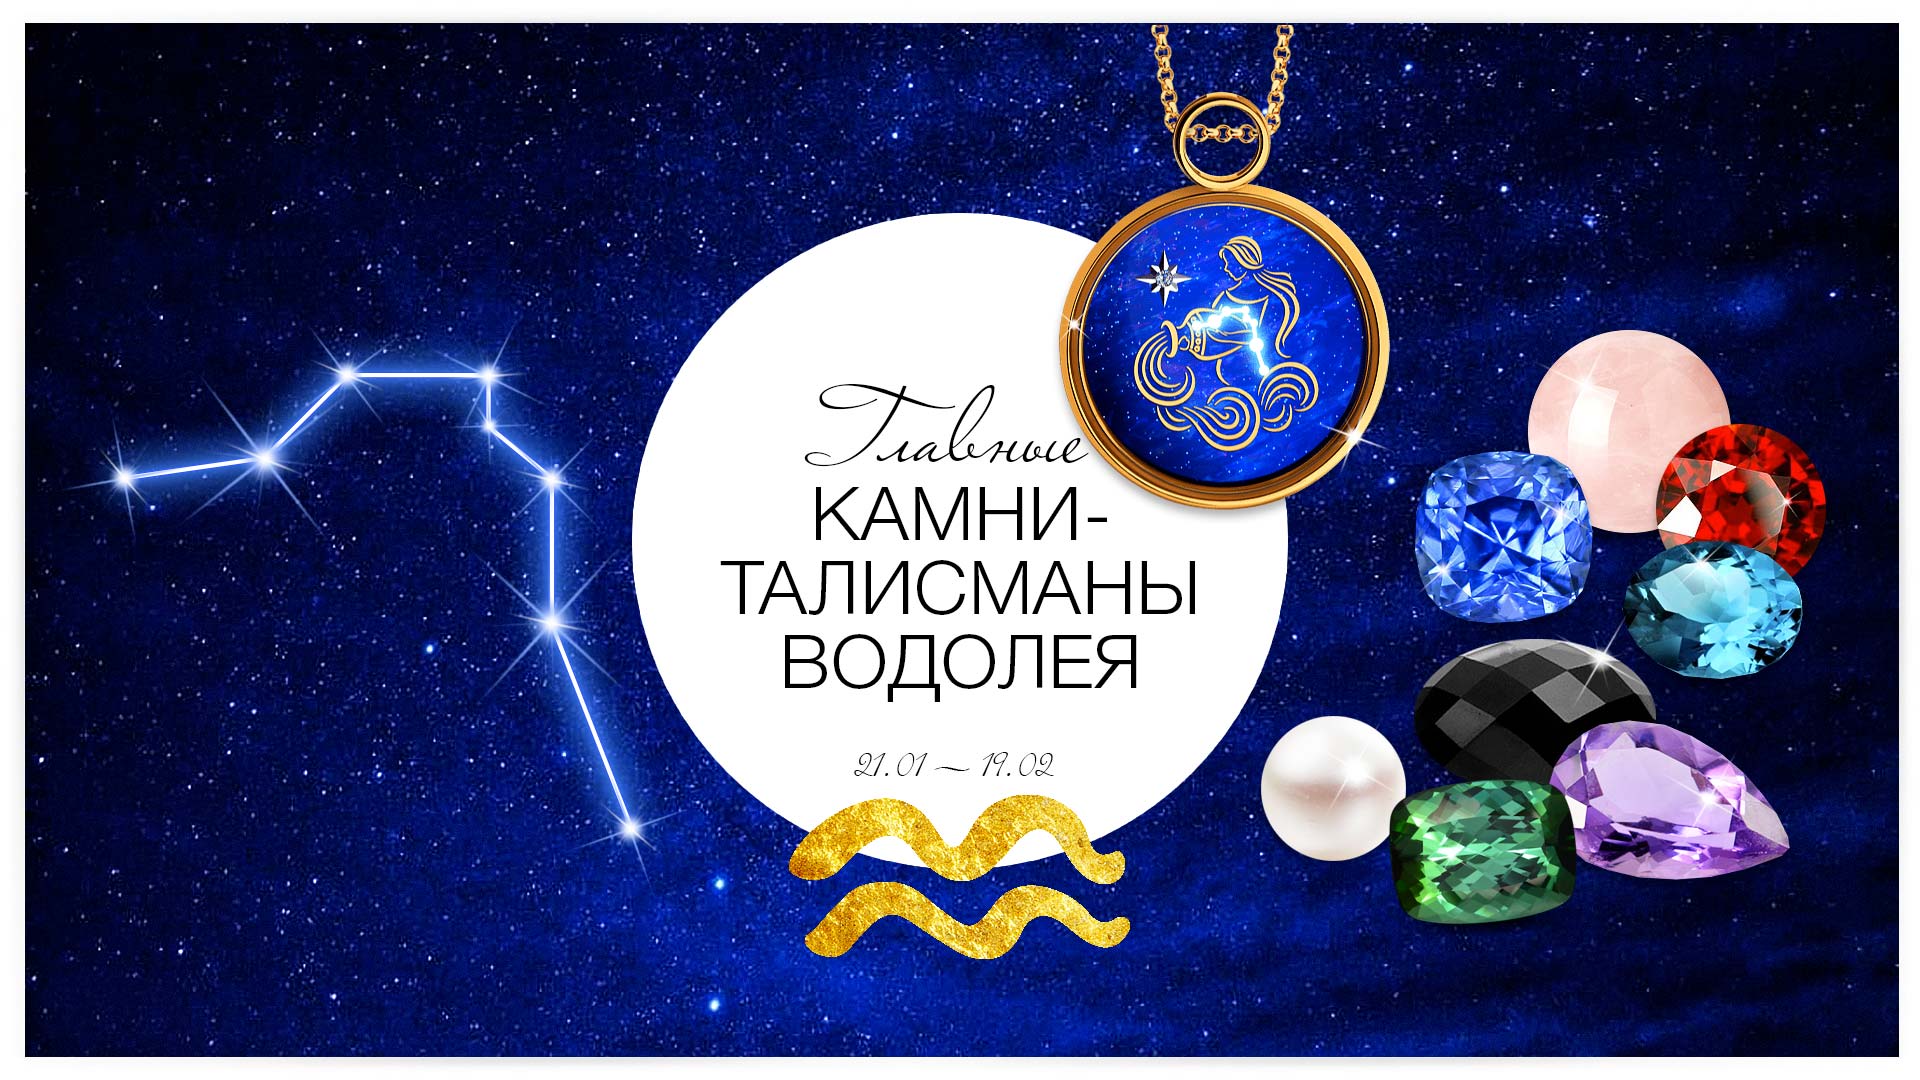 Водолей и его камень талисман лучшие шаманы иркутской области